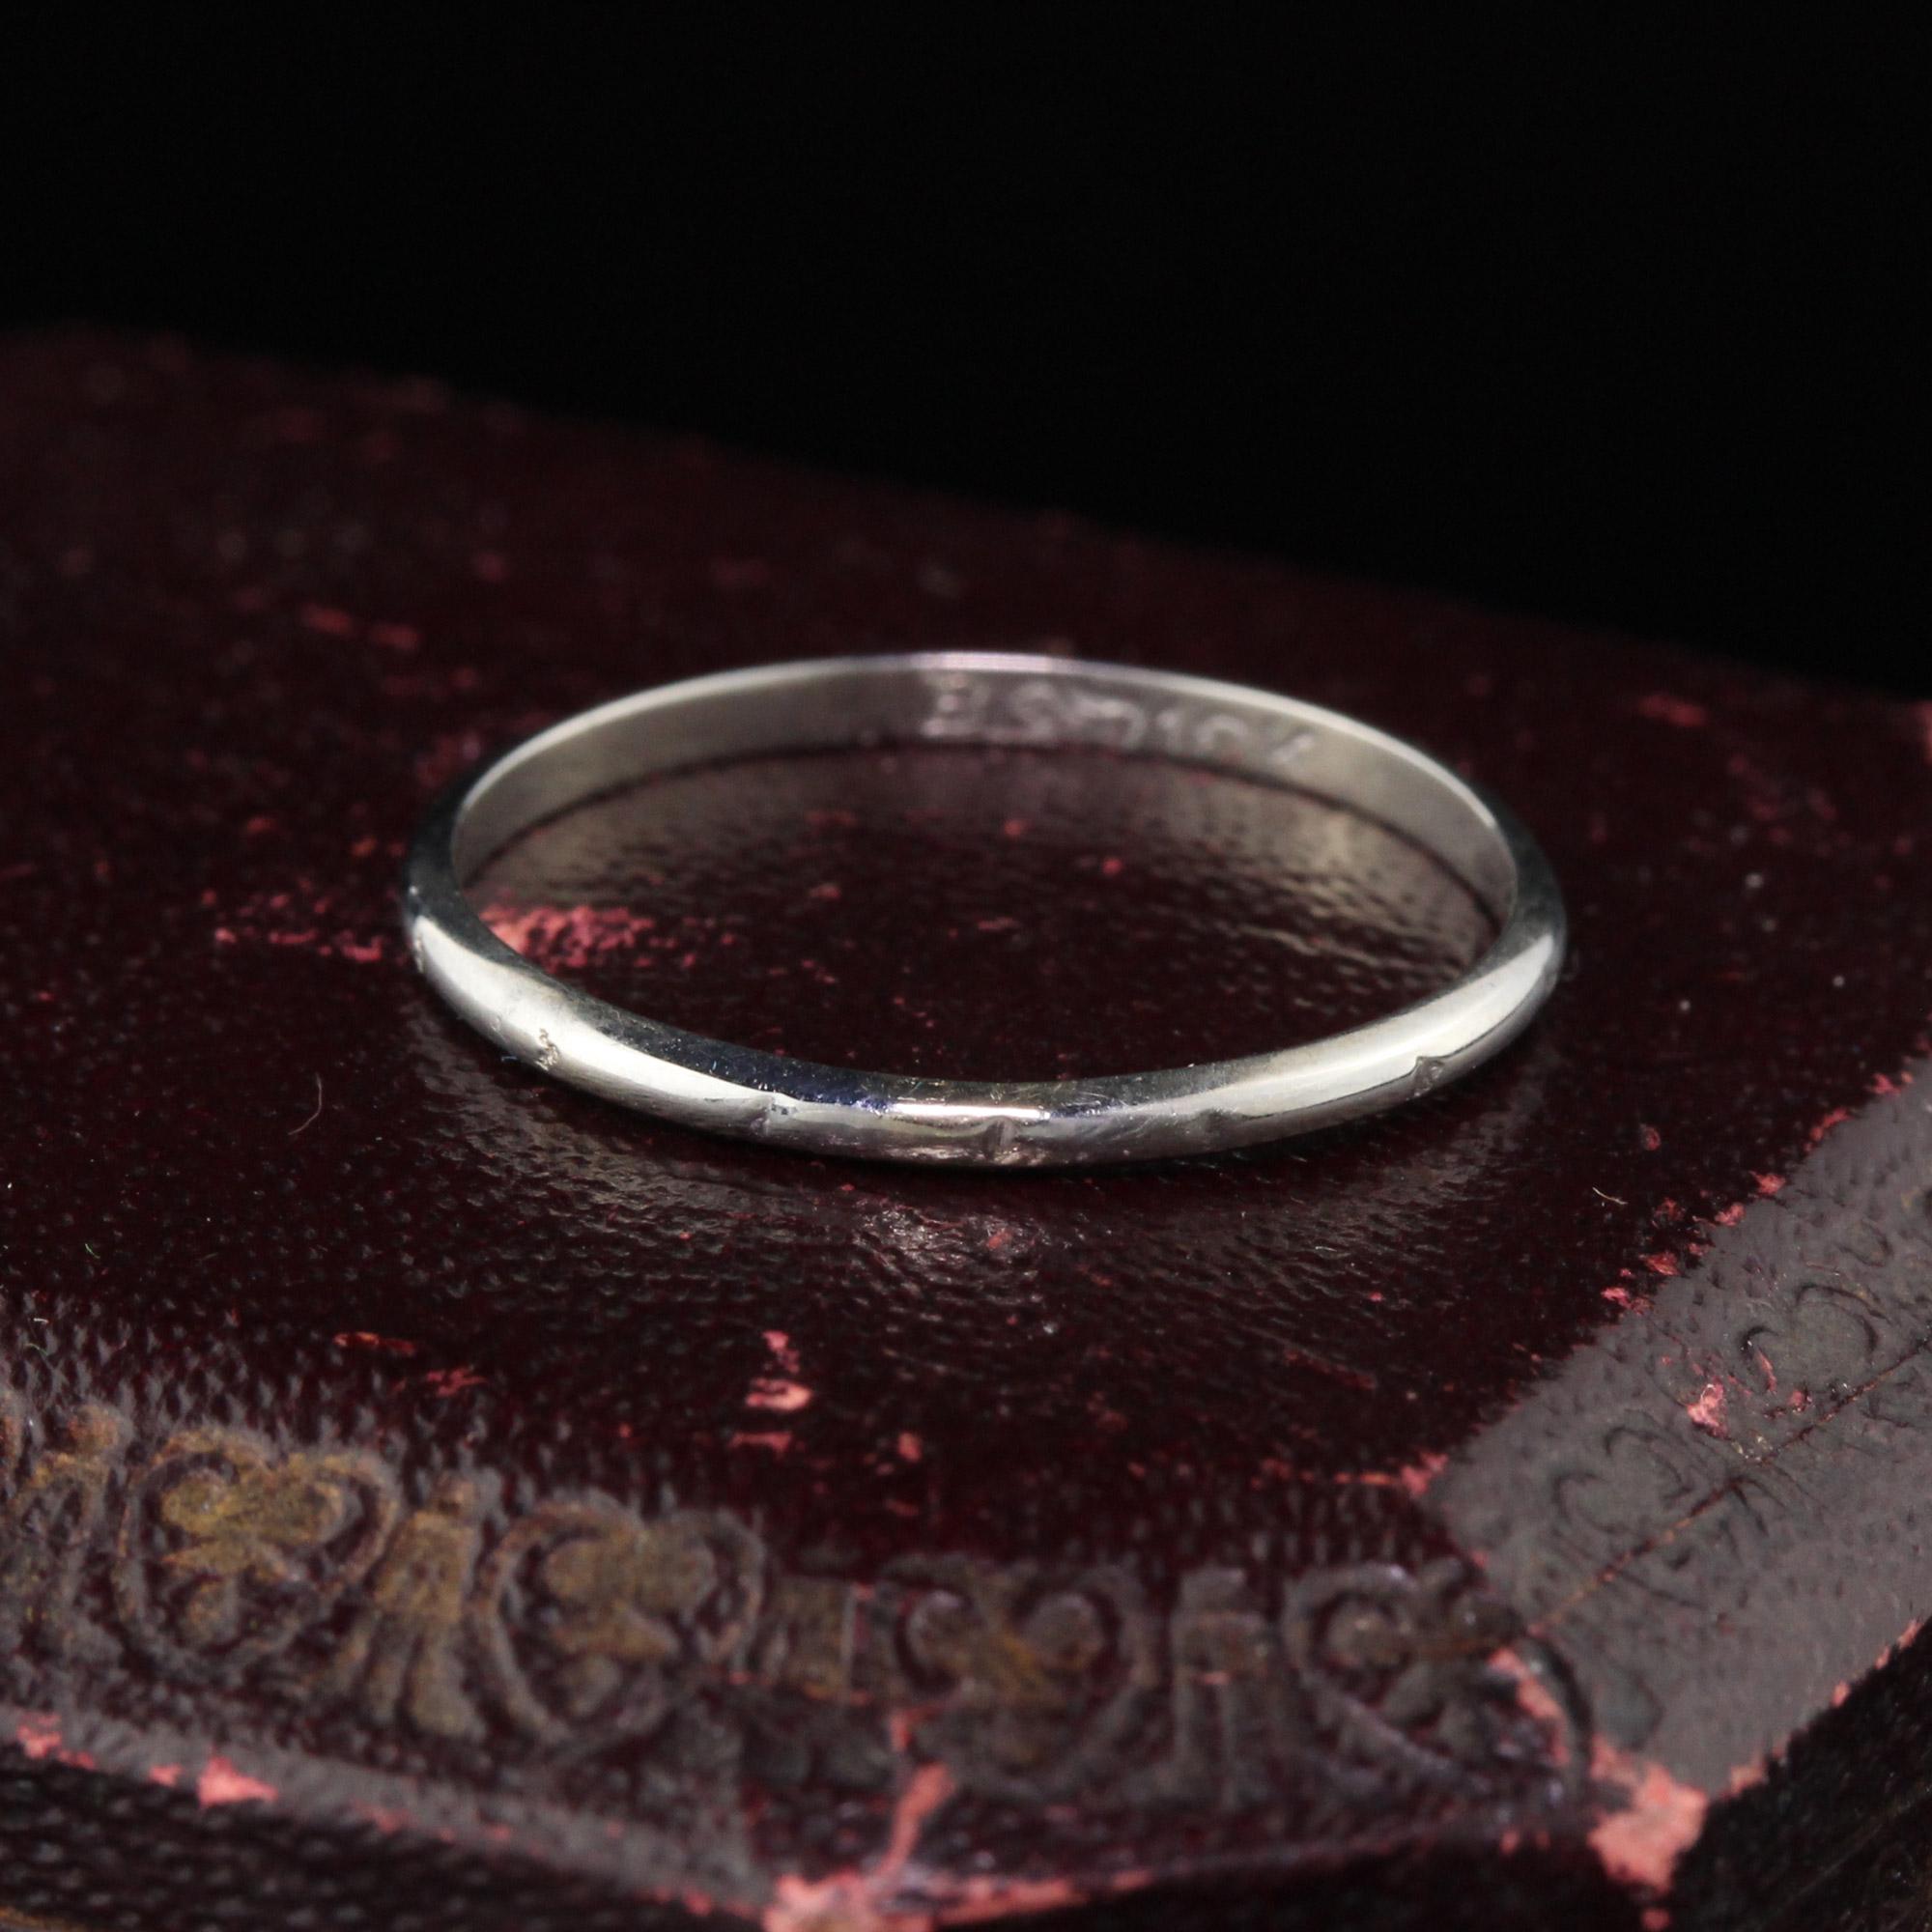 Wunderschöner Ehering aus 18 Karat Weißgold, perfekt zum Stapeln.

#R0361

Metall: 18K Weißgold 

Gewicht: 0,9 Gramm

Ringgröße: 6 1/4

Dieser Ring kann gegen eine Gebühr von $50 in der Größe angepasst werden!

*Bitte beachten Sie, dass wir keine